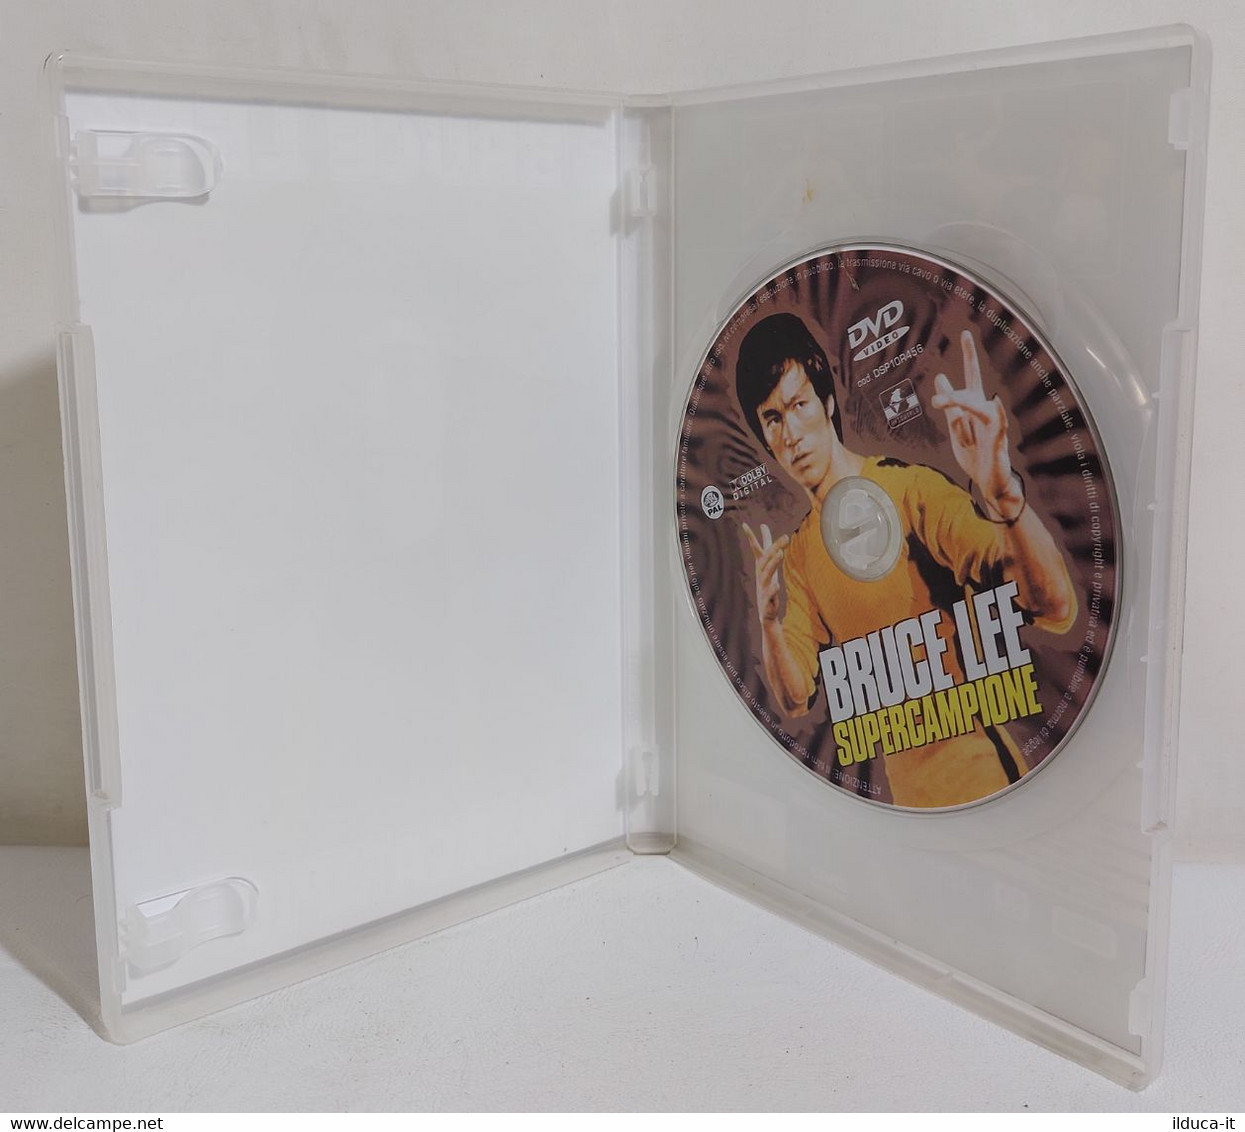 I111056 DVD Documentario - Bruce Lee Supercampione - Documentaires